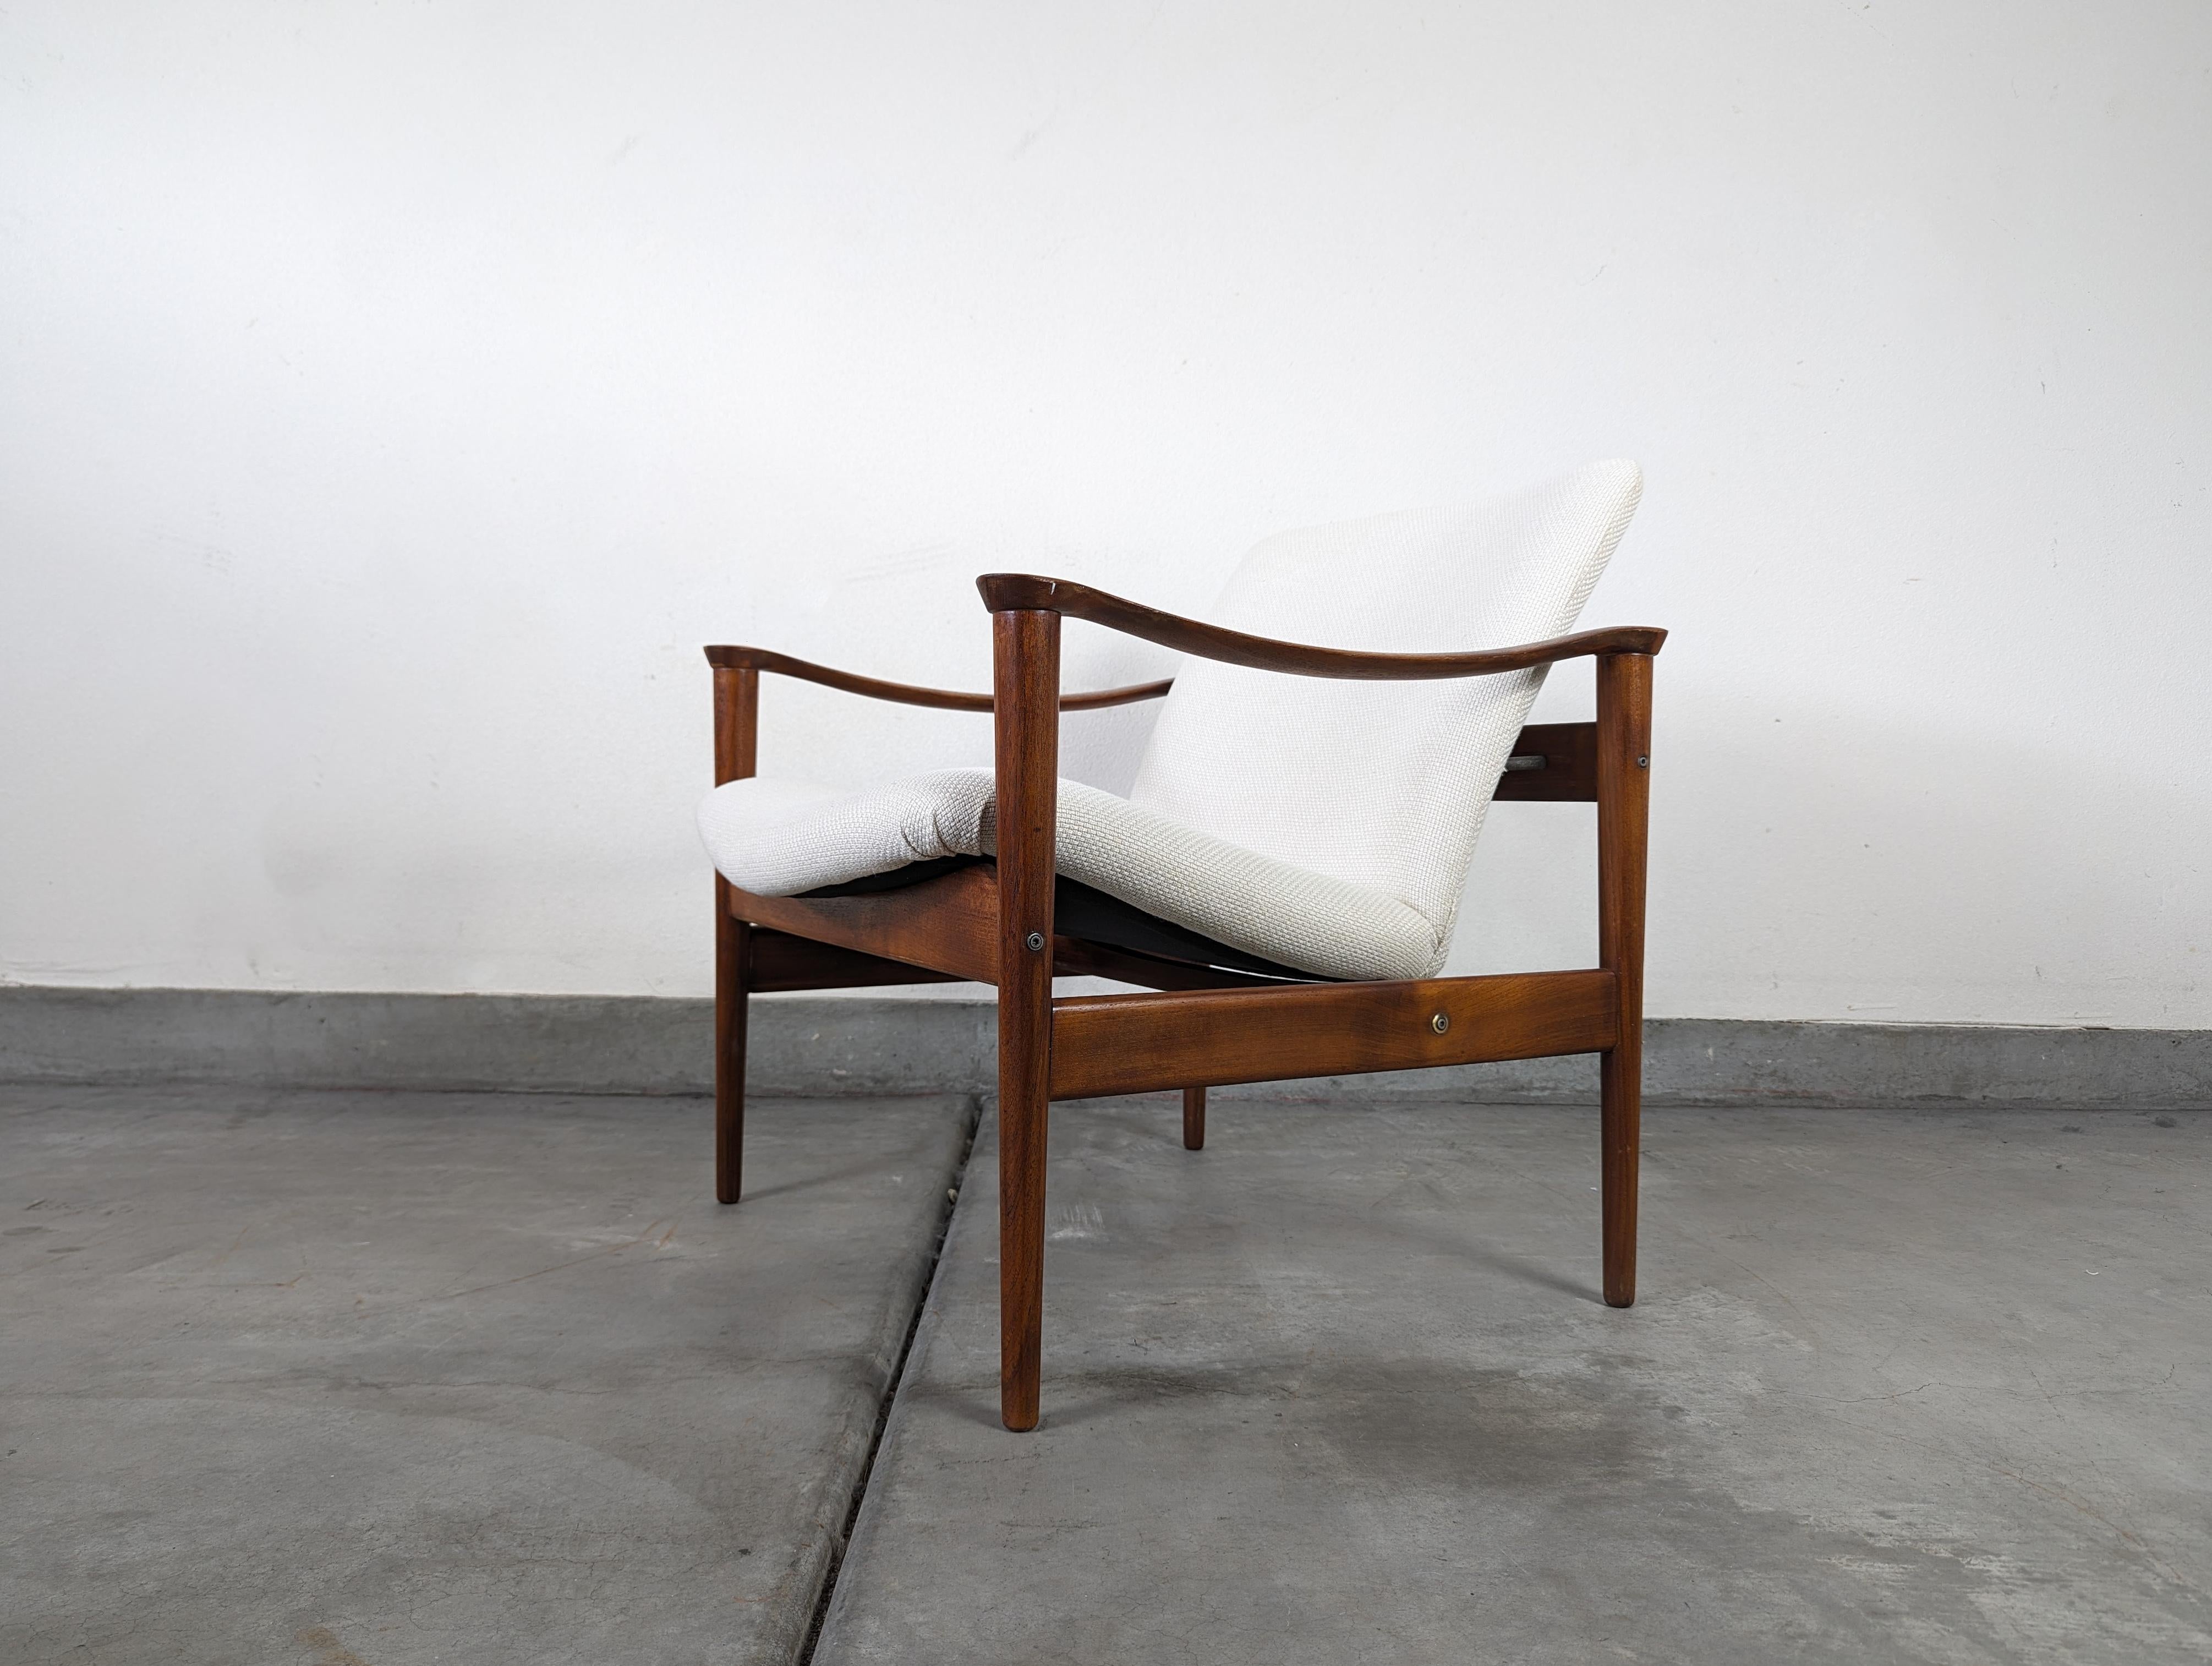 Remontez le temps avec cette époustouflante chaise en teck moderne du milieu du siècle, conçue par le célèbre designer norvégien Fredrik A. Kayser pour Vatne Møbelfabrik dans les années 1950. Cette pièce emblématique témoigne de l'attrait intemporel